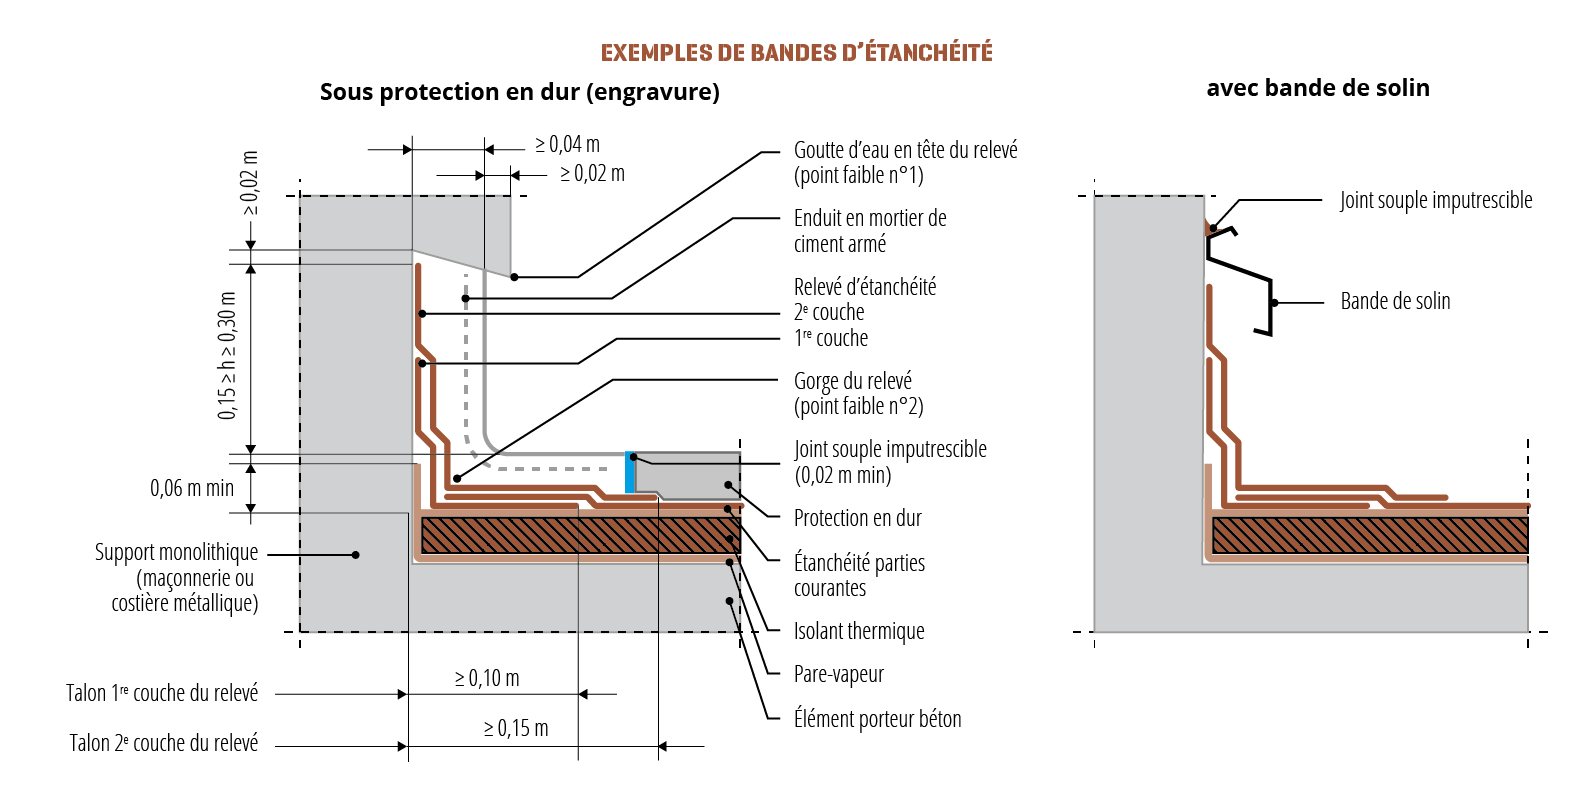 Schéma d'une bande d'étanchéité sous protection en dur (engravure) et avec bande de solin.